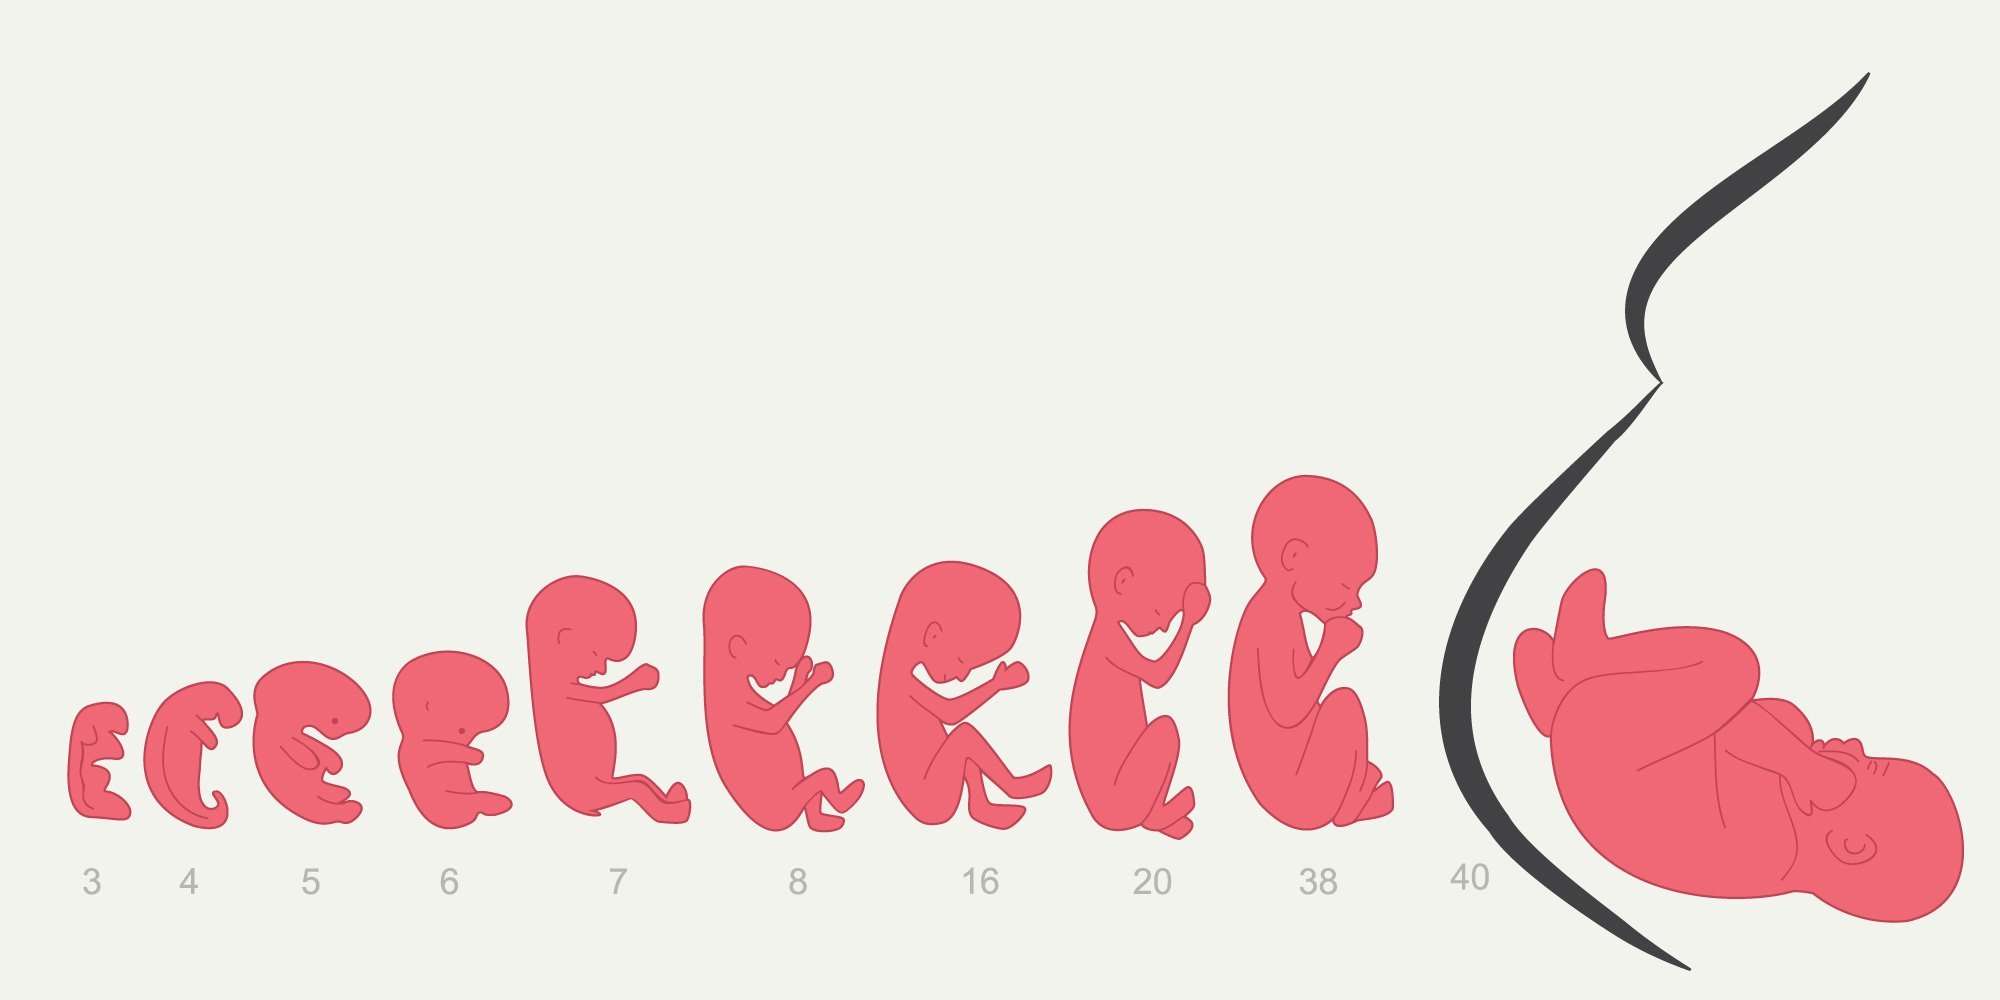 שלבי התפתחות העובר ברחם מדי שבוע עד ליום הלידה